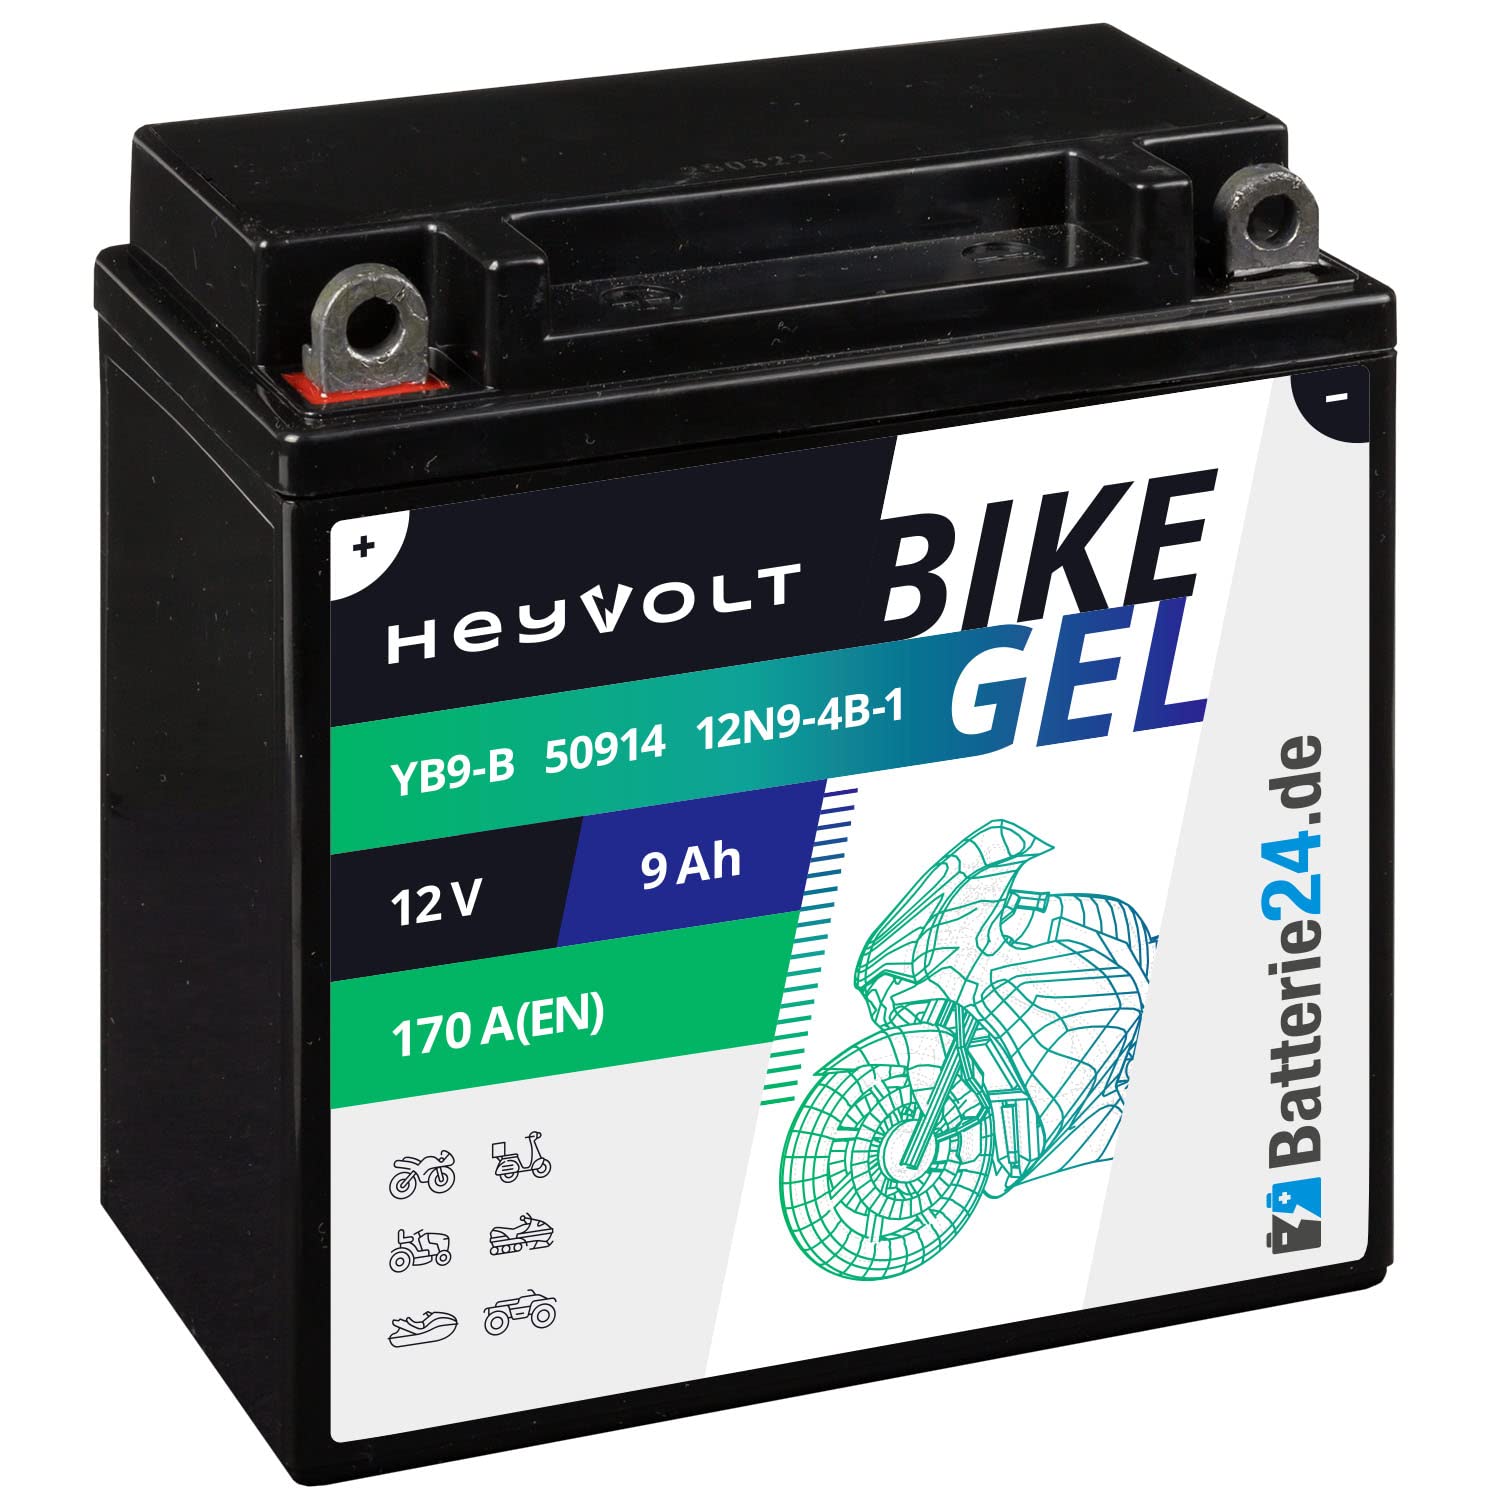 HeyVolt GEL Motorradbatterie 12V 9Ah 12N9-4B-1 YB9-B CB9-B 50914 12-9-4B-1 JMB9-B von Batterie24.de